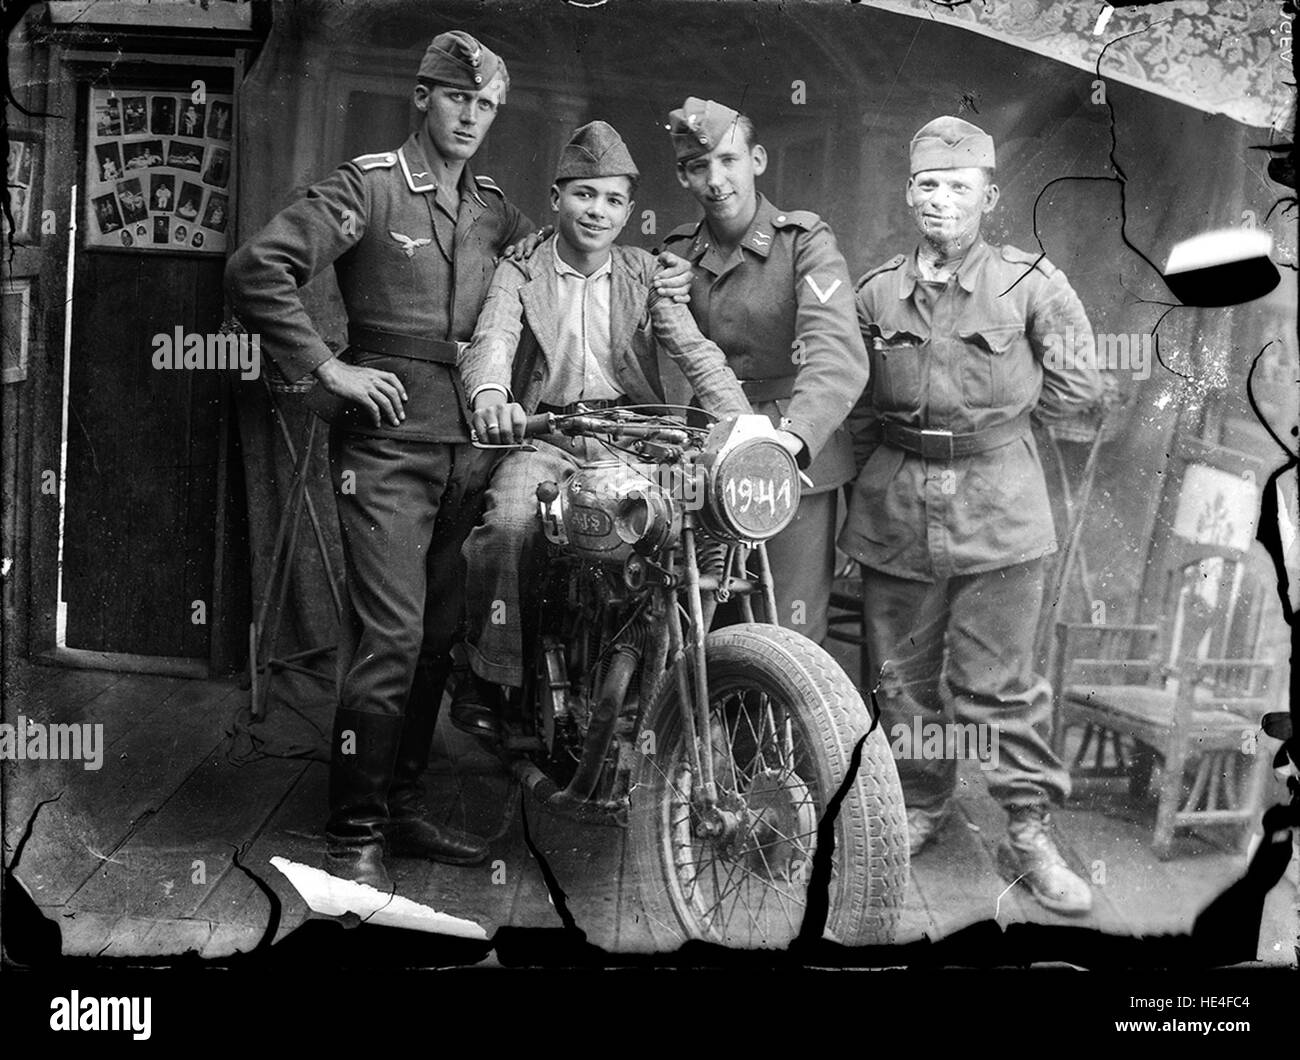 Inv. 1237  Sergent și fruntaș de trupe aeriene germane, cel mai probabil anti-aeriene.  Copilul de pe motocicleta AJS poartă o bonetă românească M1940, ca și soldatul ce are tot o uniformă model 1940.  The project Costică Acsinte Archive needs help: please donate and share the link igg.me/at/acsinte/x/6146081 ( http://igg.me/at/acsinte/x/6146081 )   DAM by IDimager www.idimager.com/WP/?page id=20 ( http://www.idimager.com/WP/?page id=20 ) Stock Photo